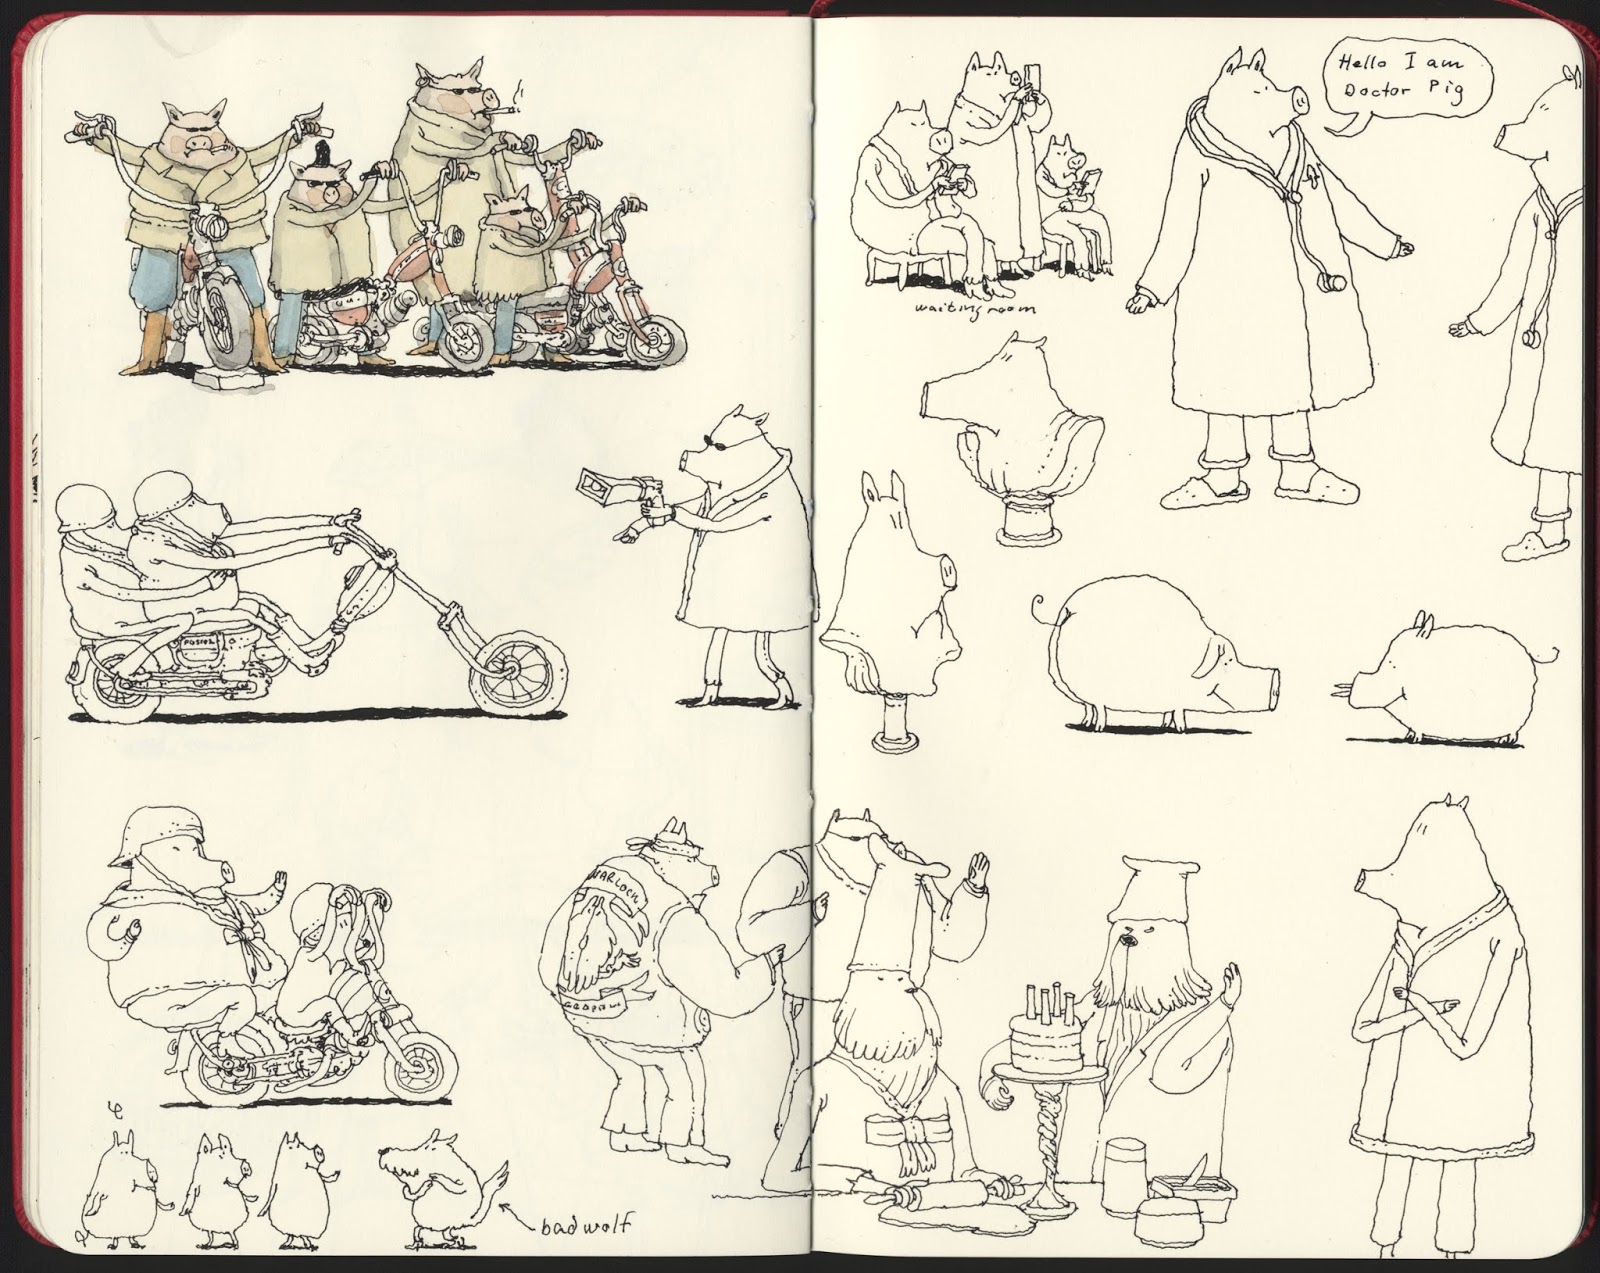 Mattias Inks: Have you seen the little piggies